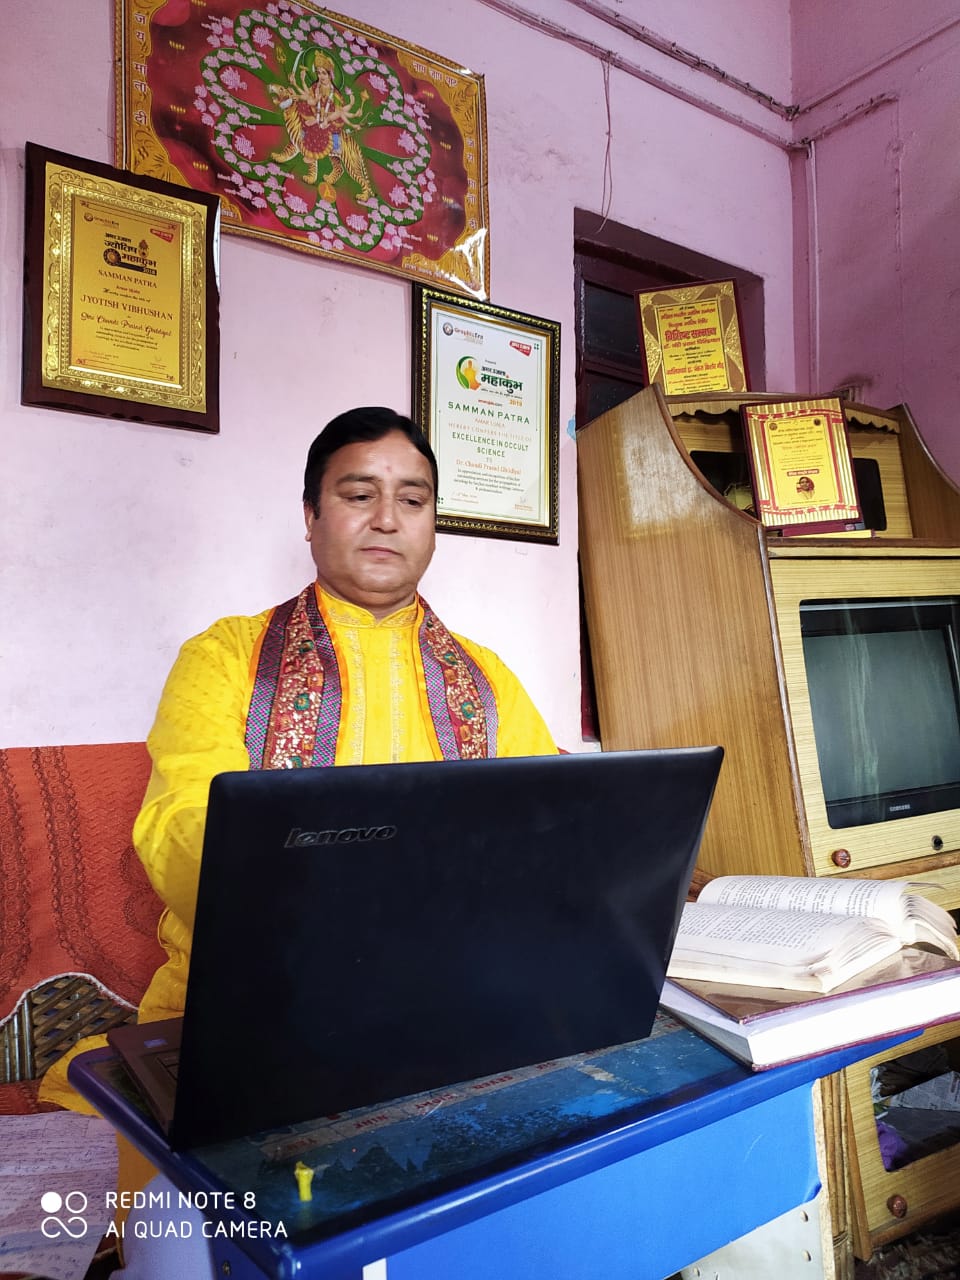 उत्तराखंड ज्योतिष रत्न डॉ चंडी प्रसाद घिल्डियाल बैसाखी पर्व पर देहरादून में